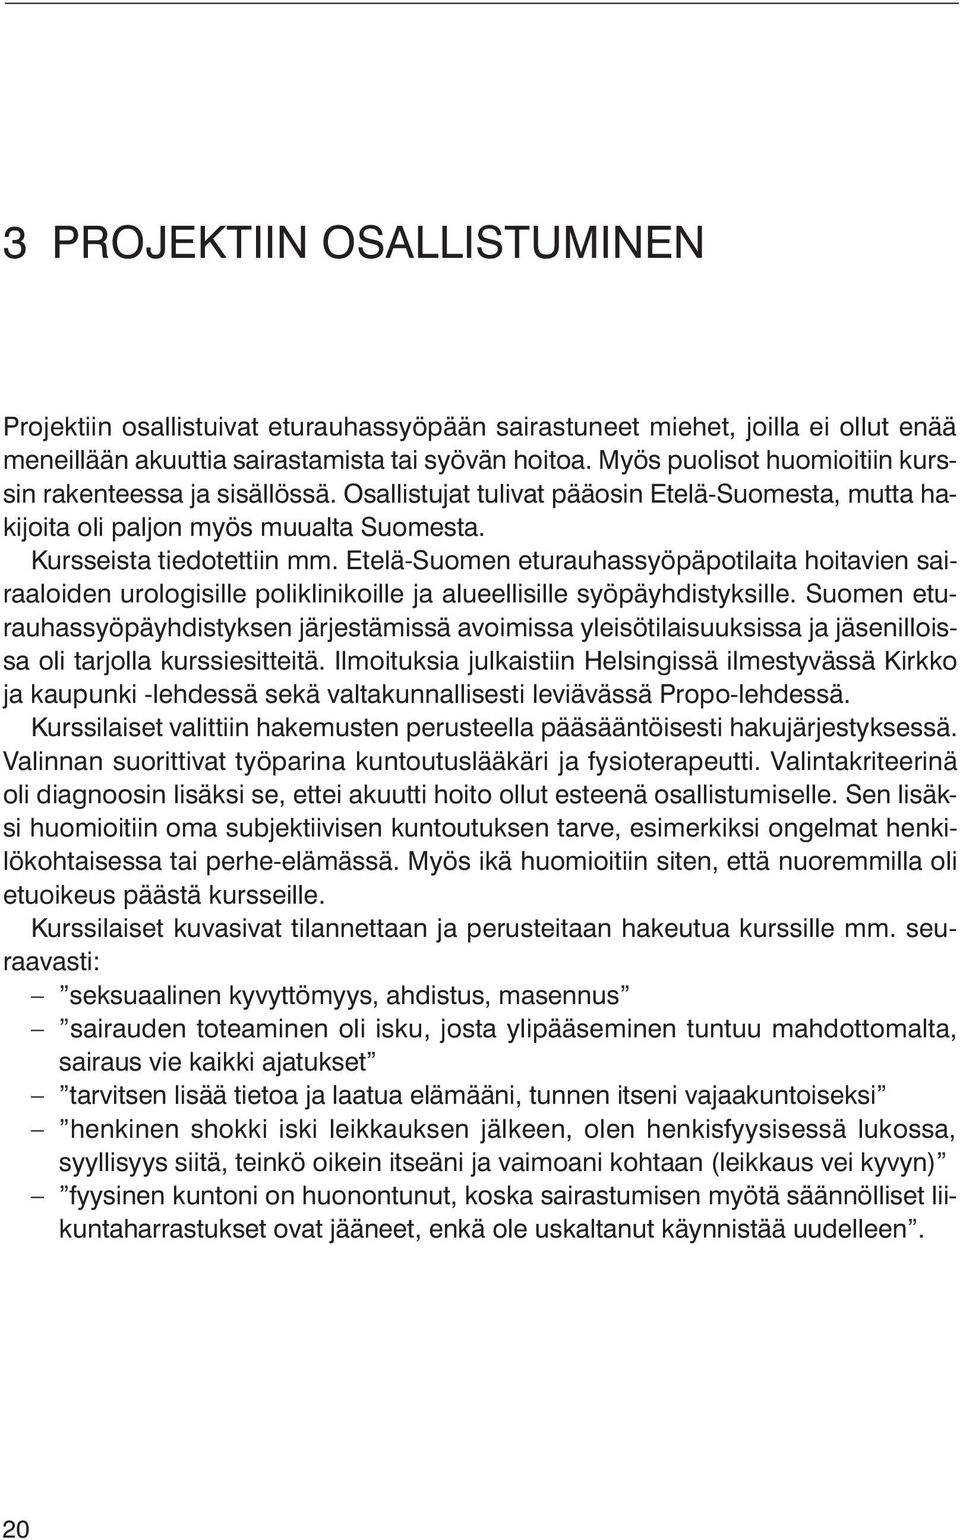 Etelä-Suomen eturauhassyöpäpotilaita hoitavien sairaaloiden urologisille poliklinikoille ja alueellisille syöpäyhdistyksille.